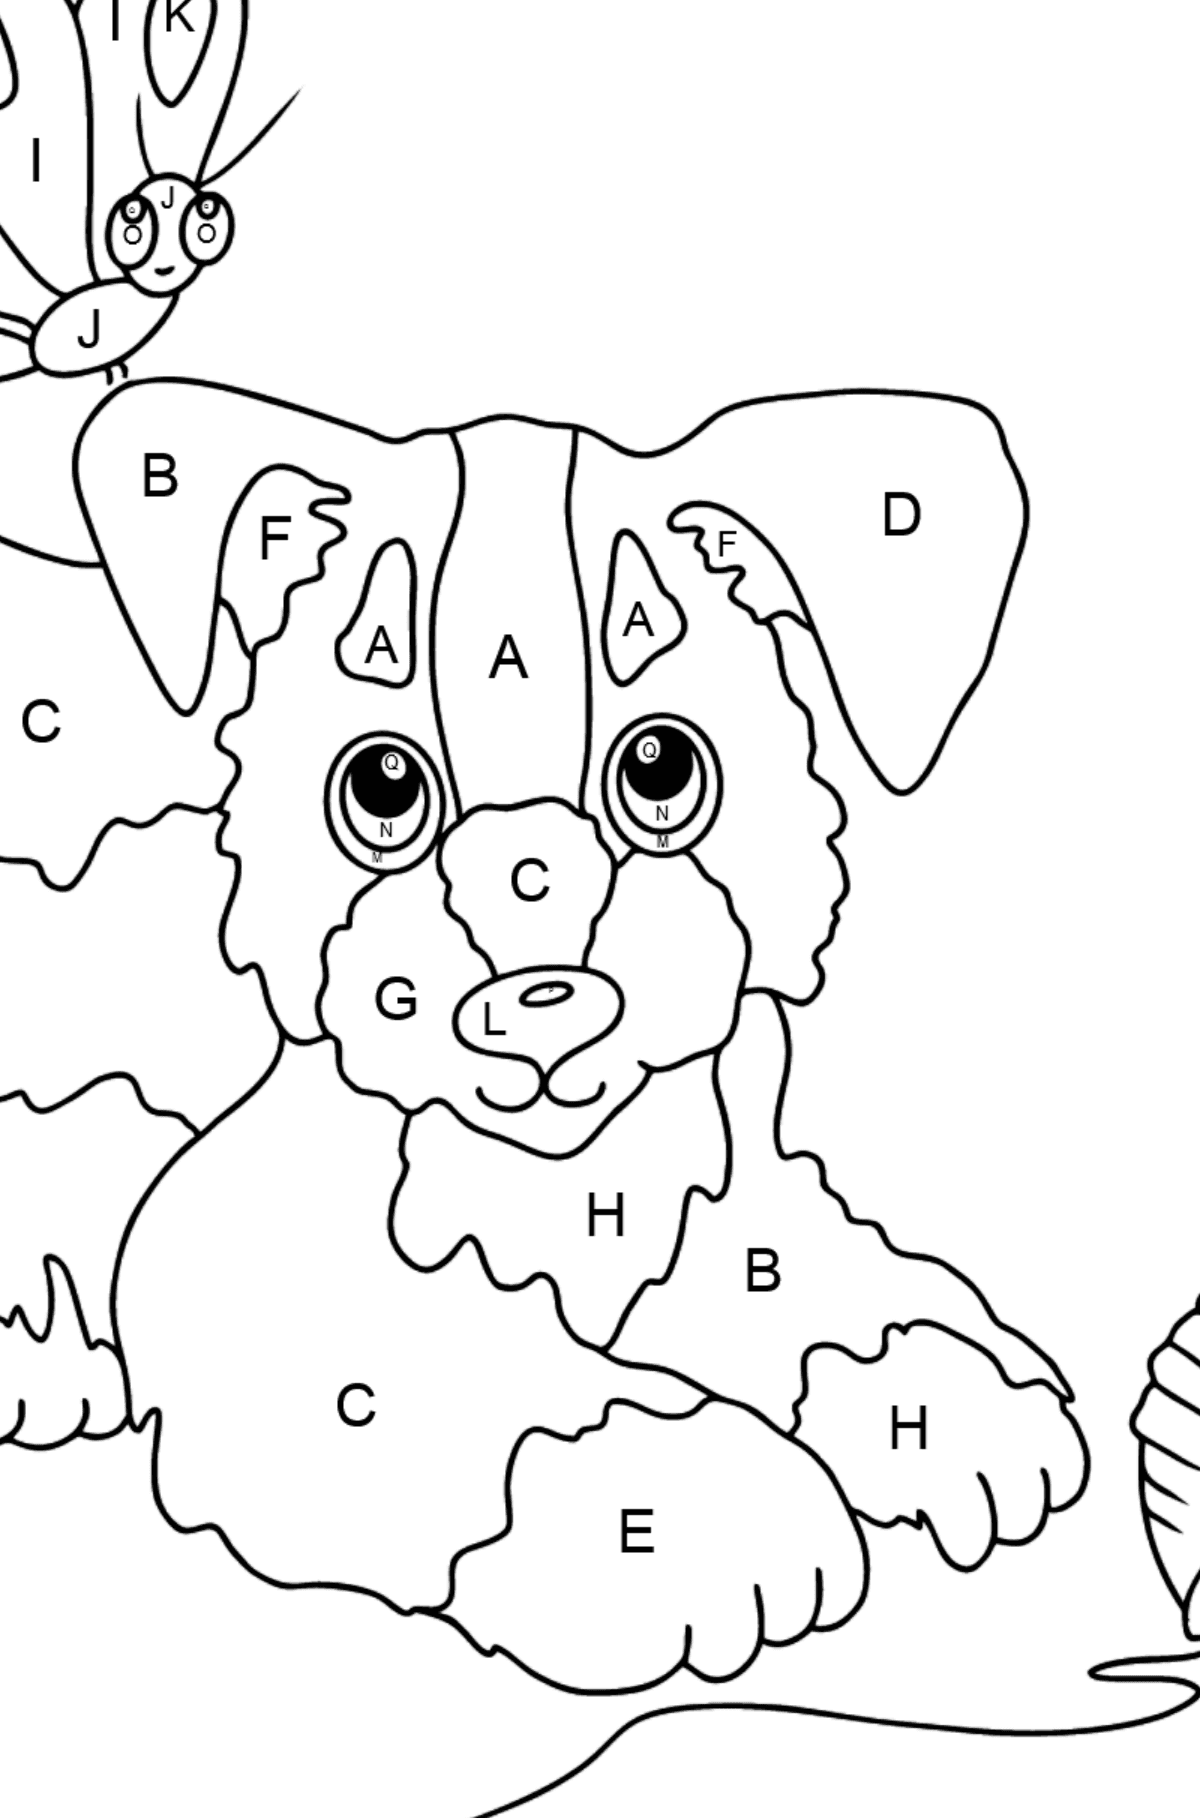 Coloriage - Un chien joue avec une pelote de laine et des papillons - Coloriage par Lettres pour les Enfants